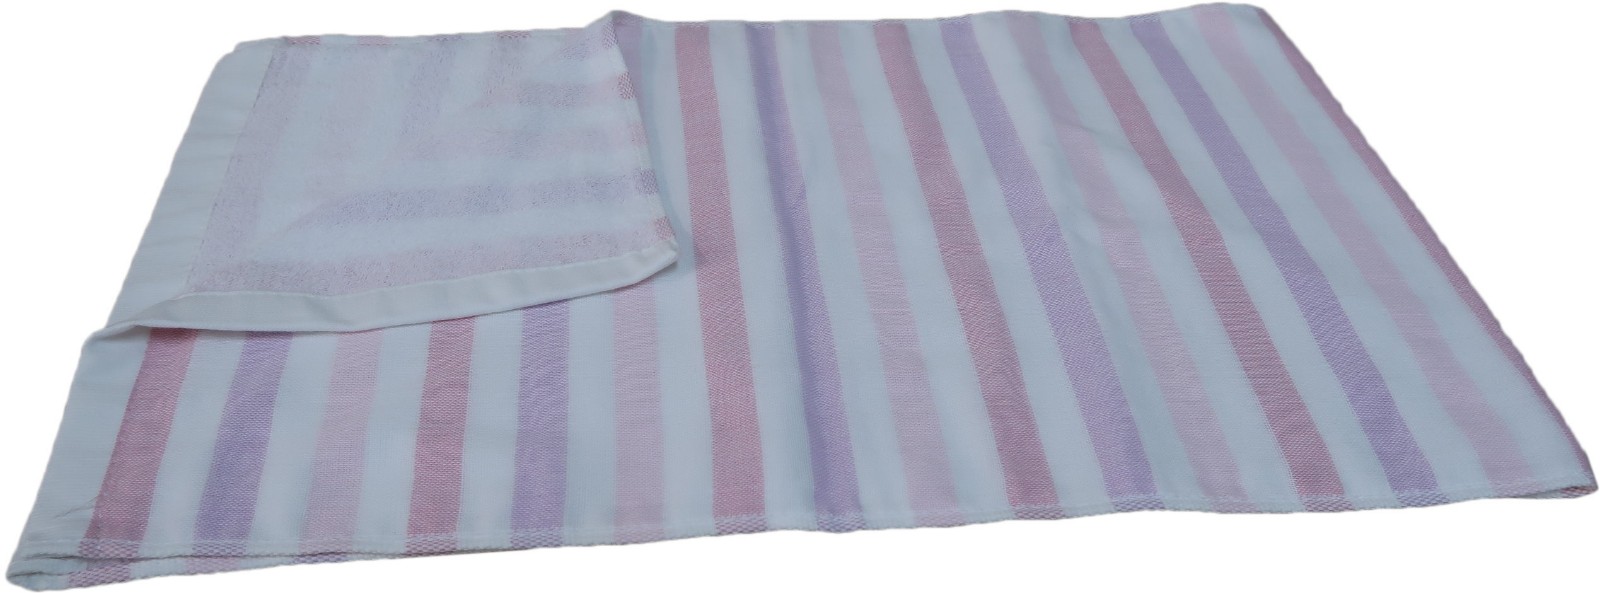 純棉條文印刷紗布巾紗布運動毛巾